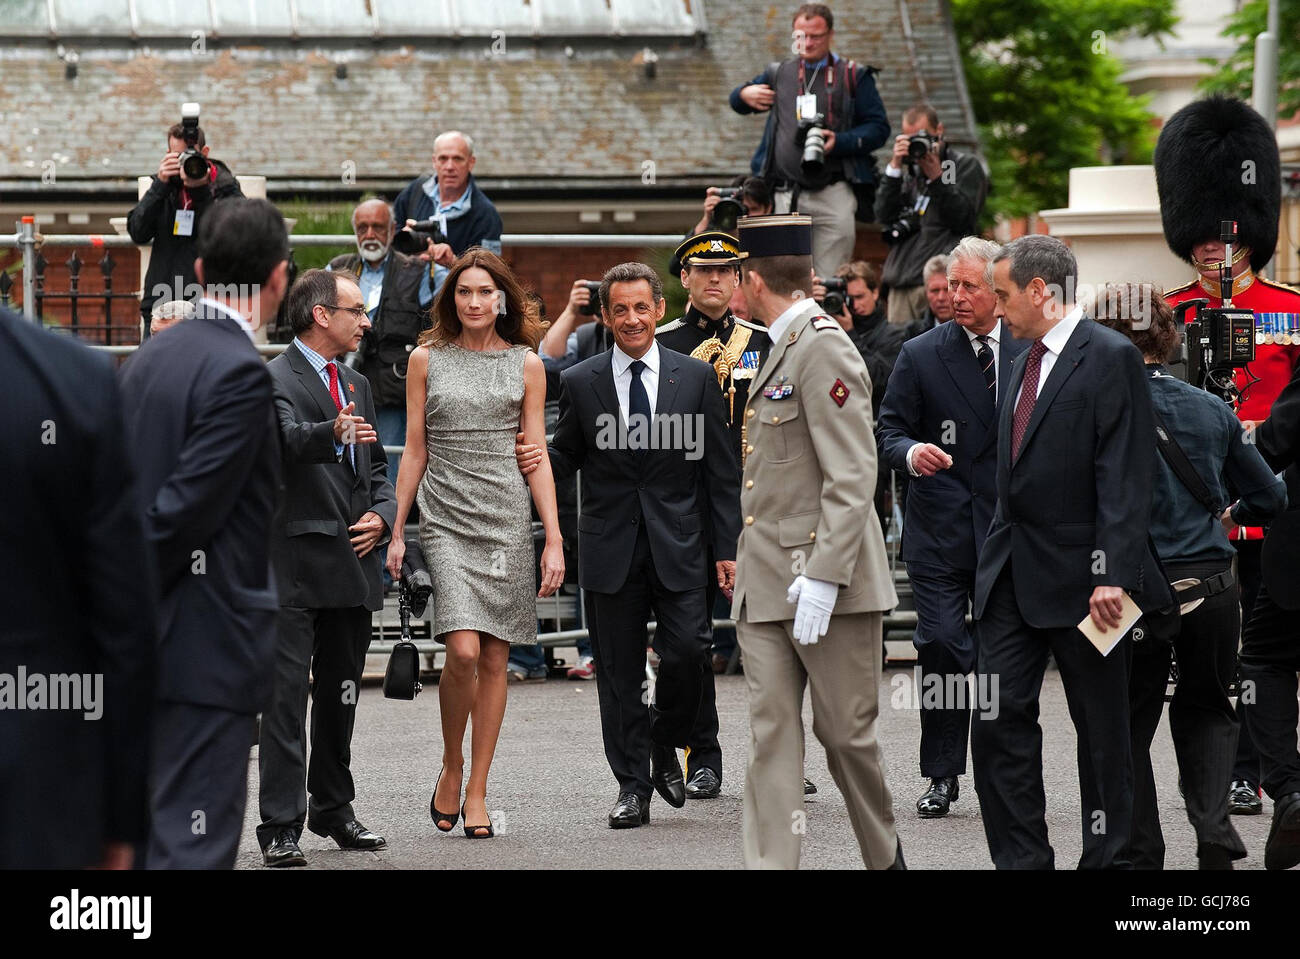 Il presidente francese Nicolas Sarkozy (centro) e sua moglie Carla Bruni-Sarkozy (centro a sinistra), arrivano a guardare le fotografie del presidente francese Charles De Gaulle durante una visita all'ex quartier generale del francese libero, ai Carlton Gardens nel centro di Londra. Foto Stock